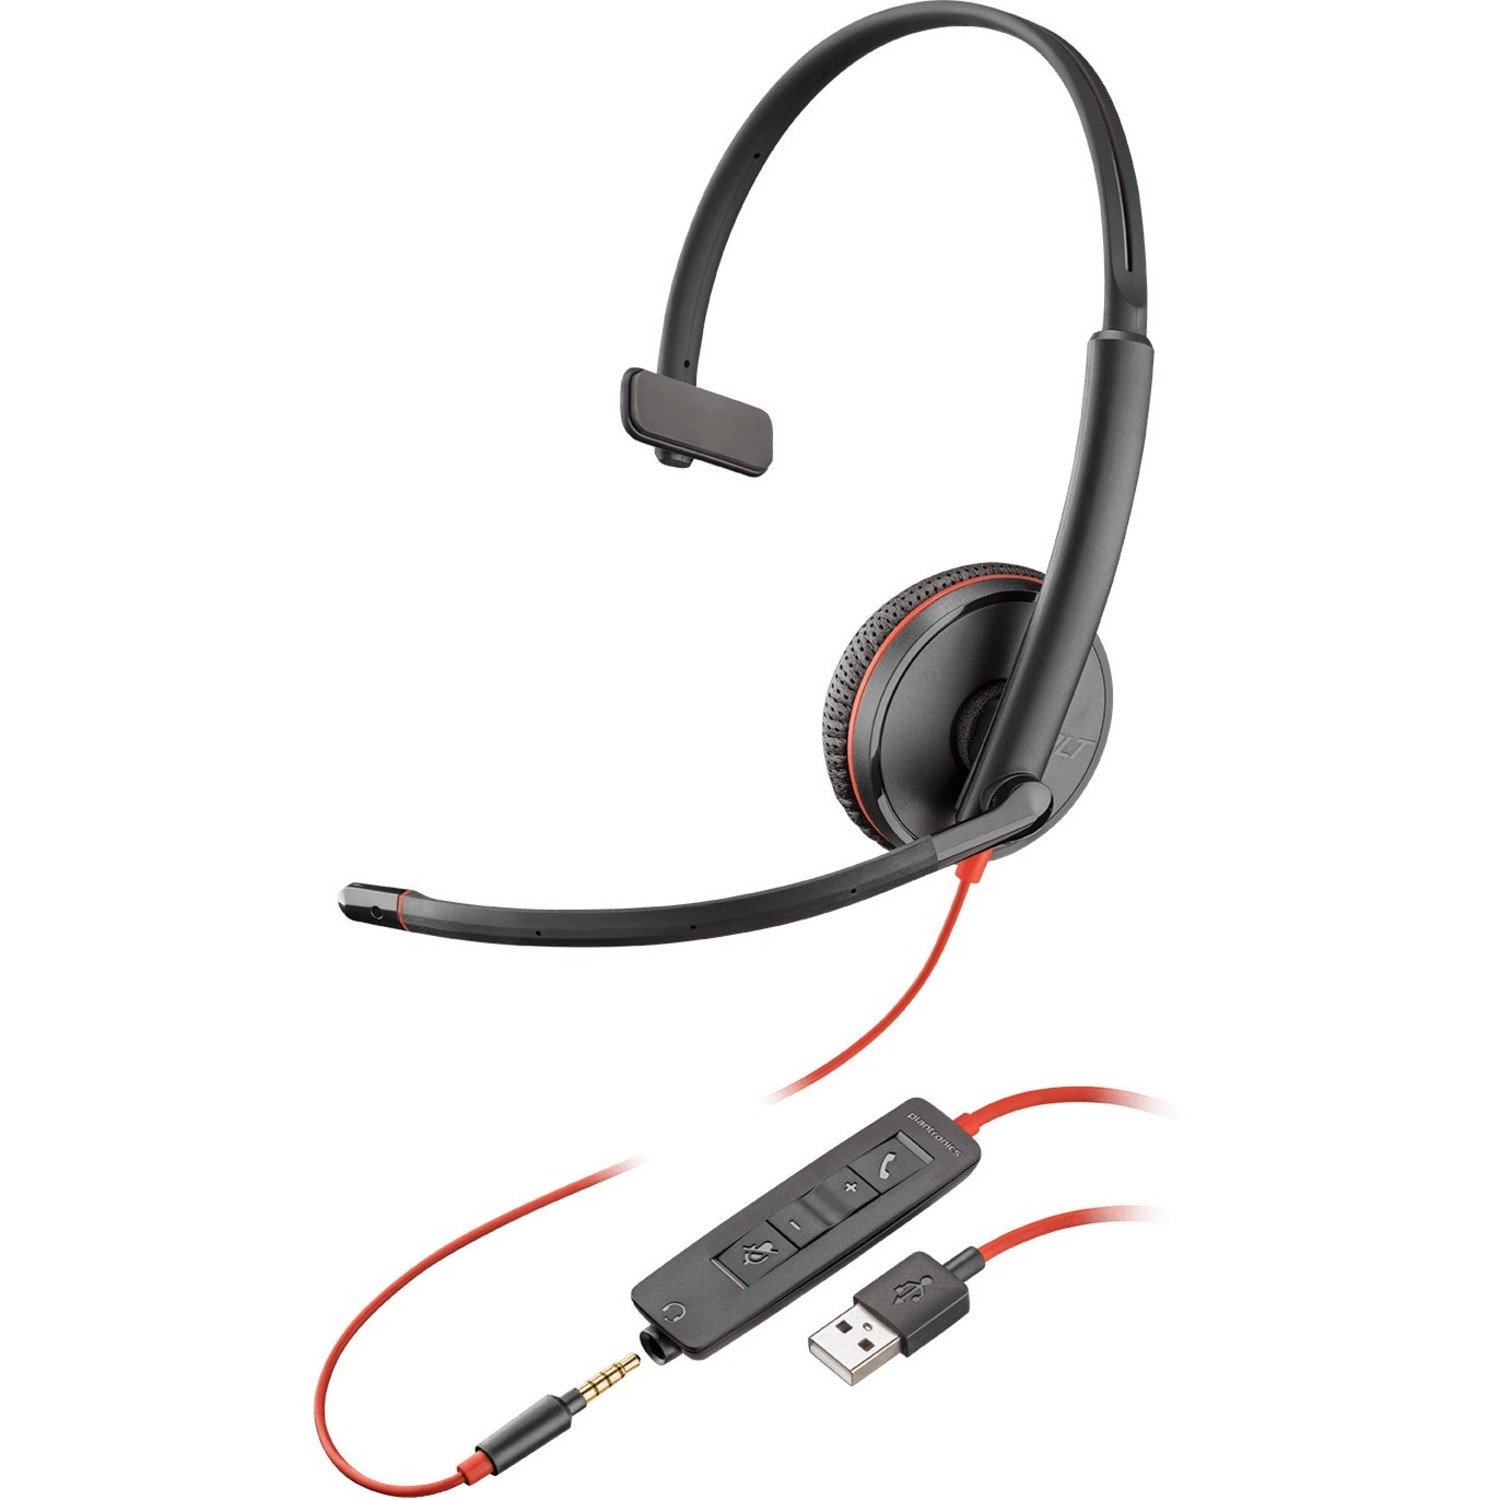 Plantronics Blackwire C3215 Headset